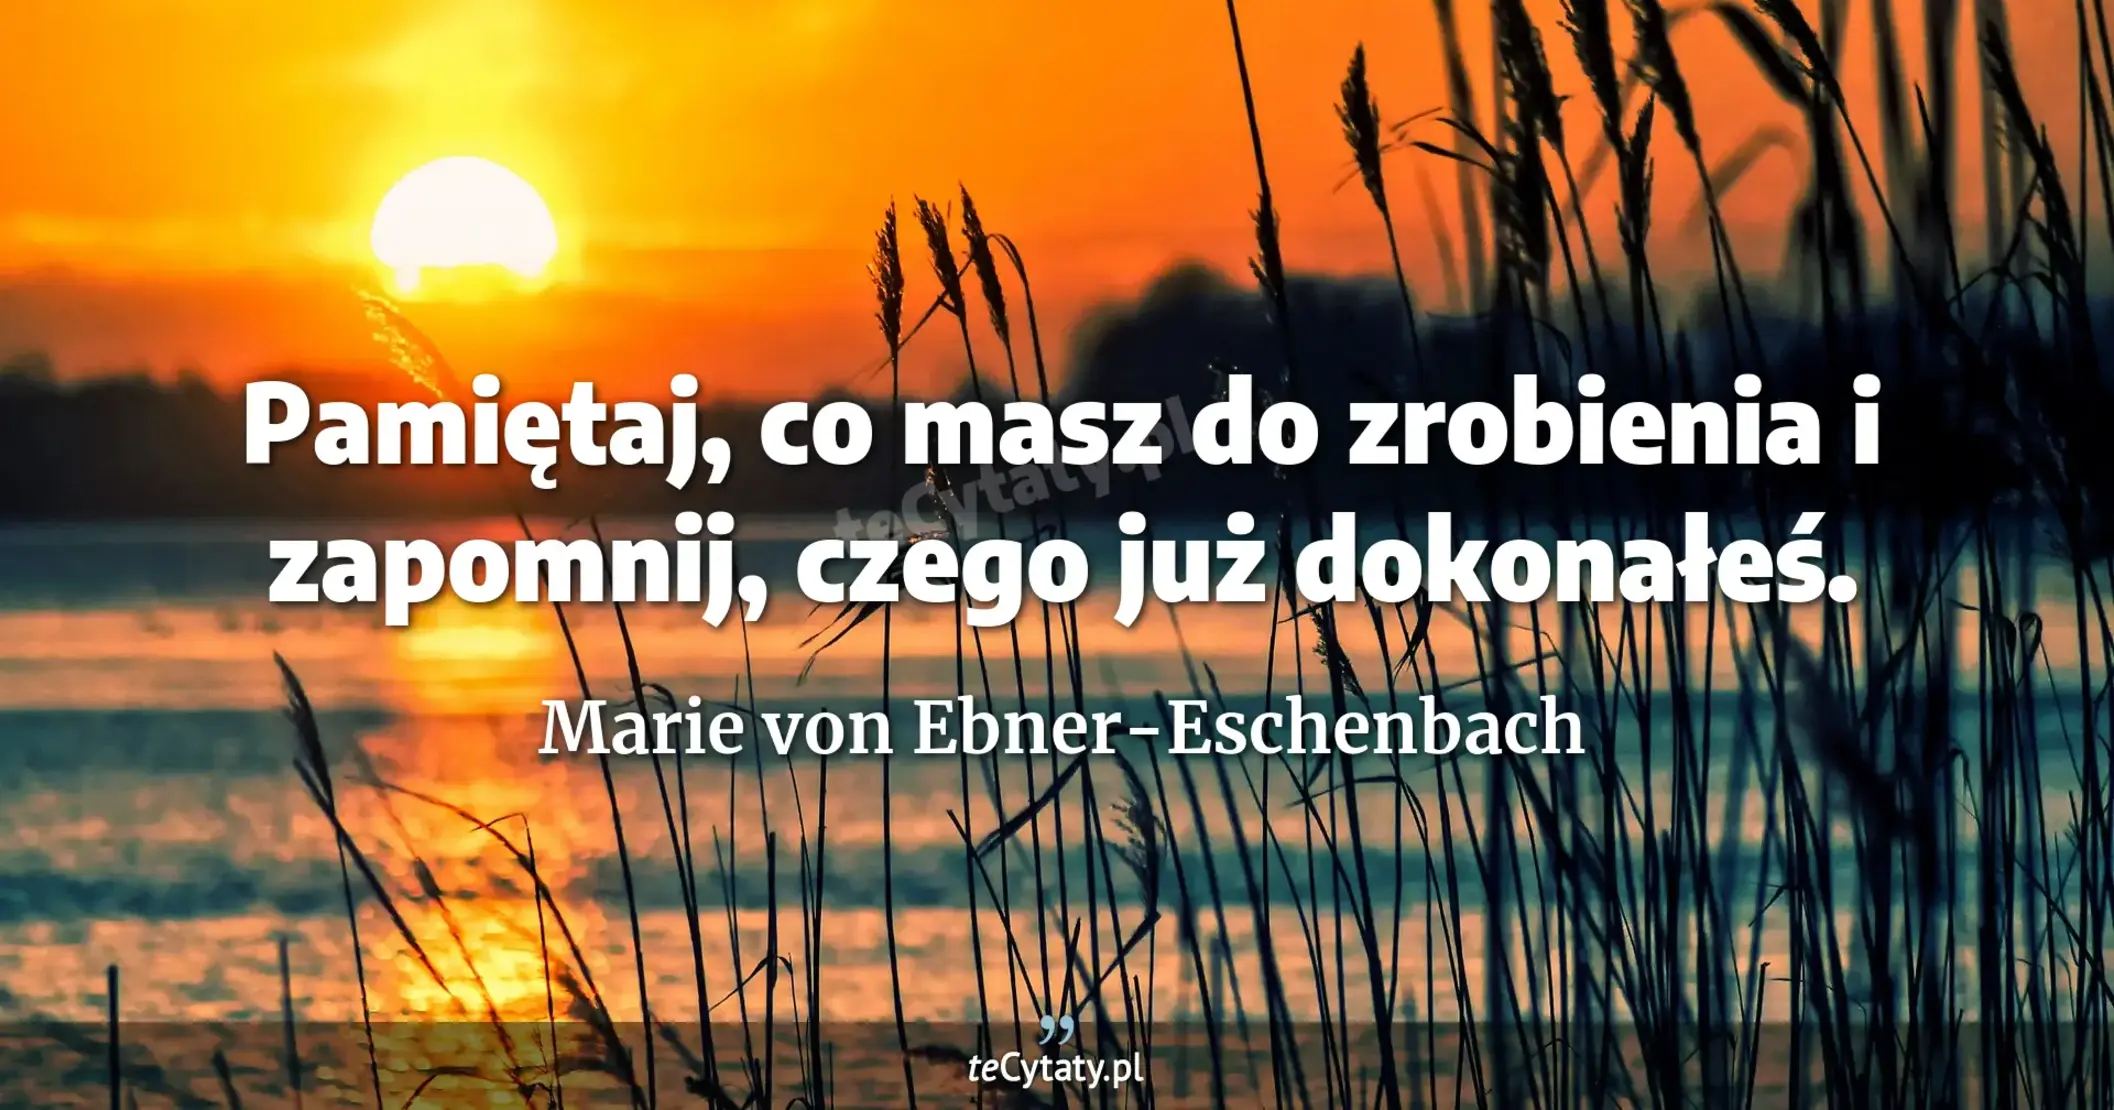 Pamiętaj, co masz do zrobienia i zapomnij, czego już dokonałeś. - Marie von Ebner-Eschenbach